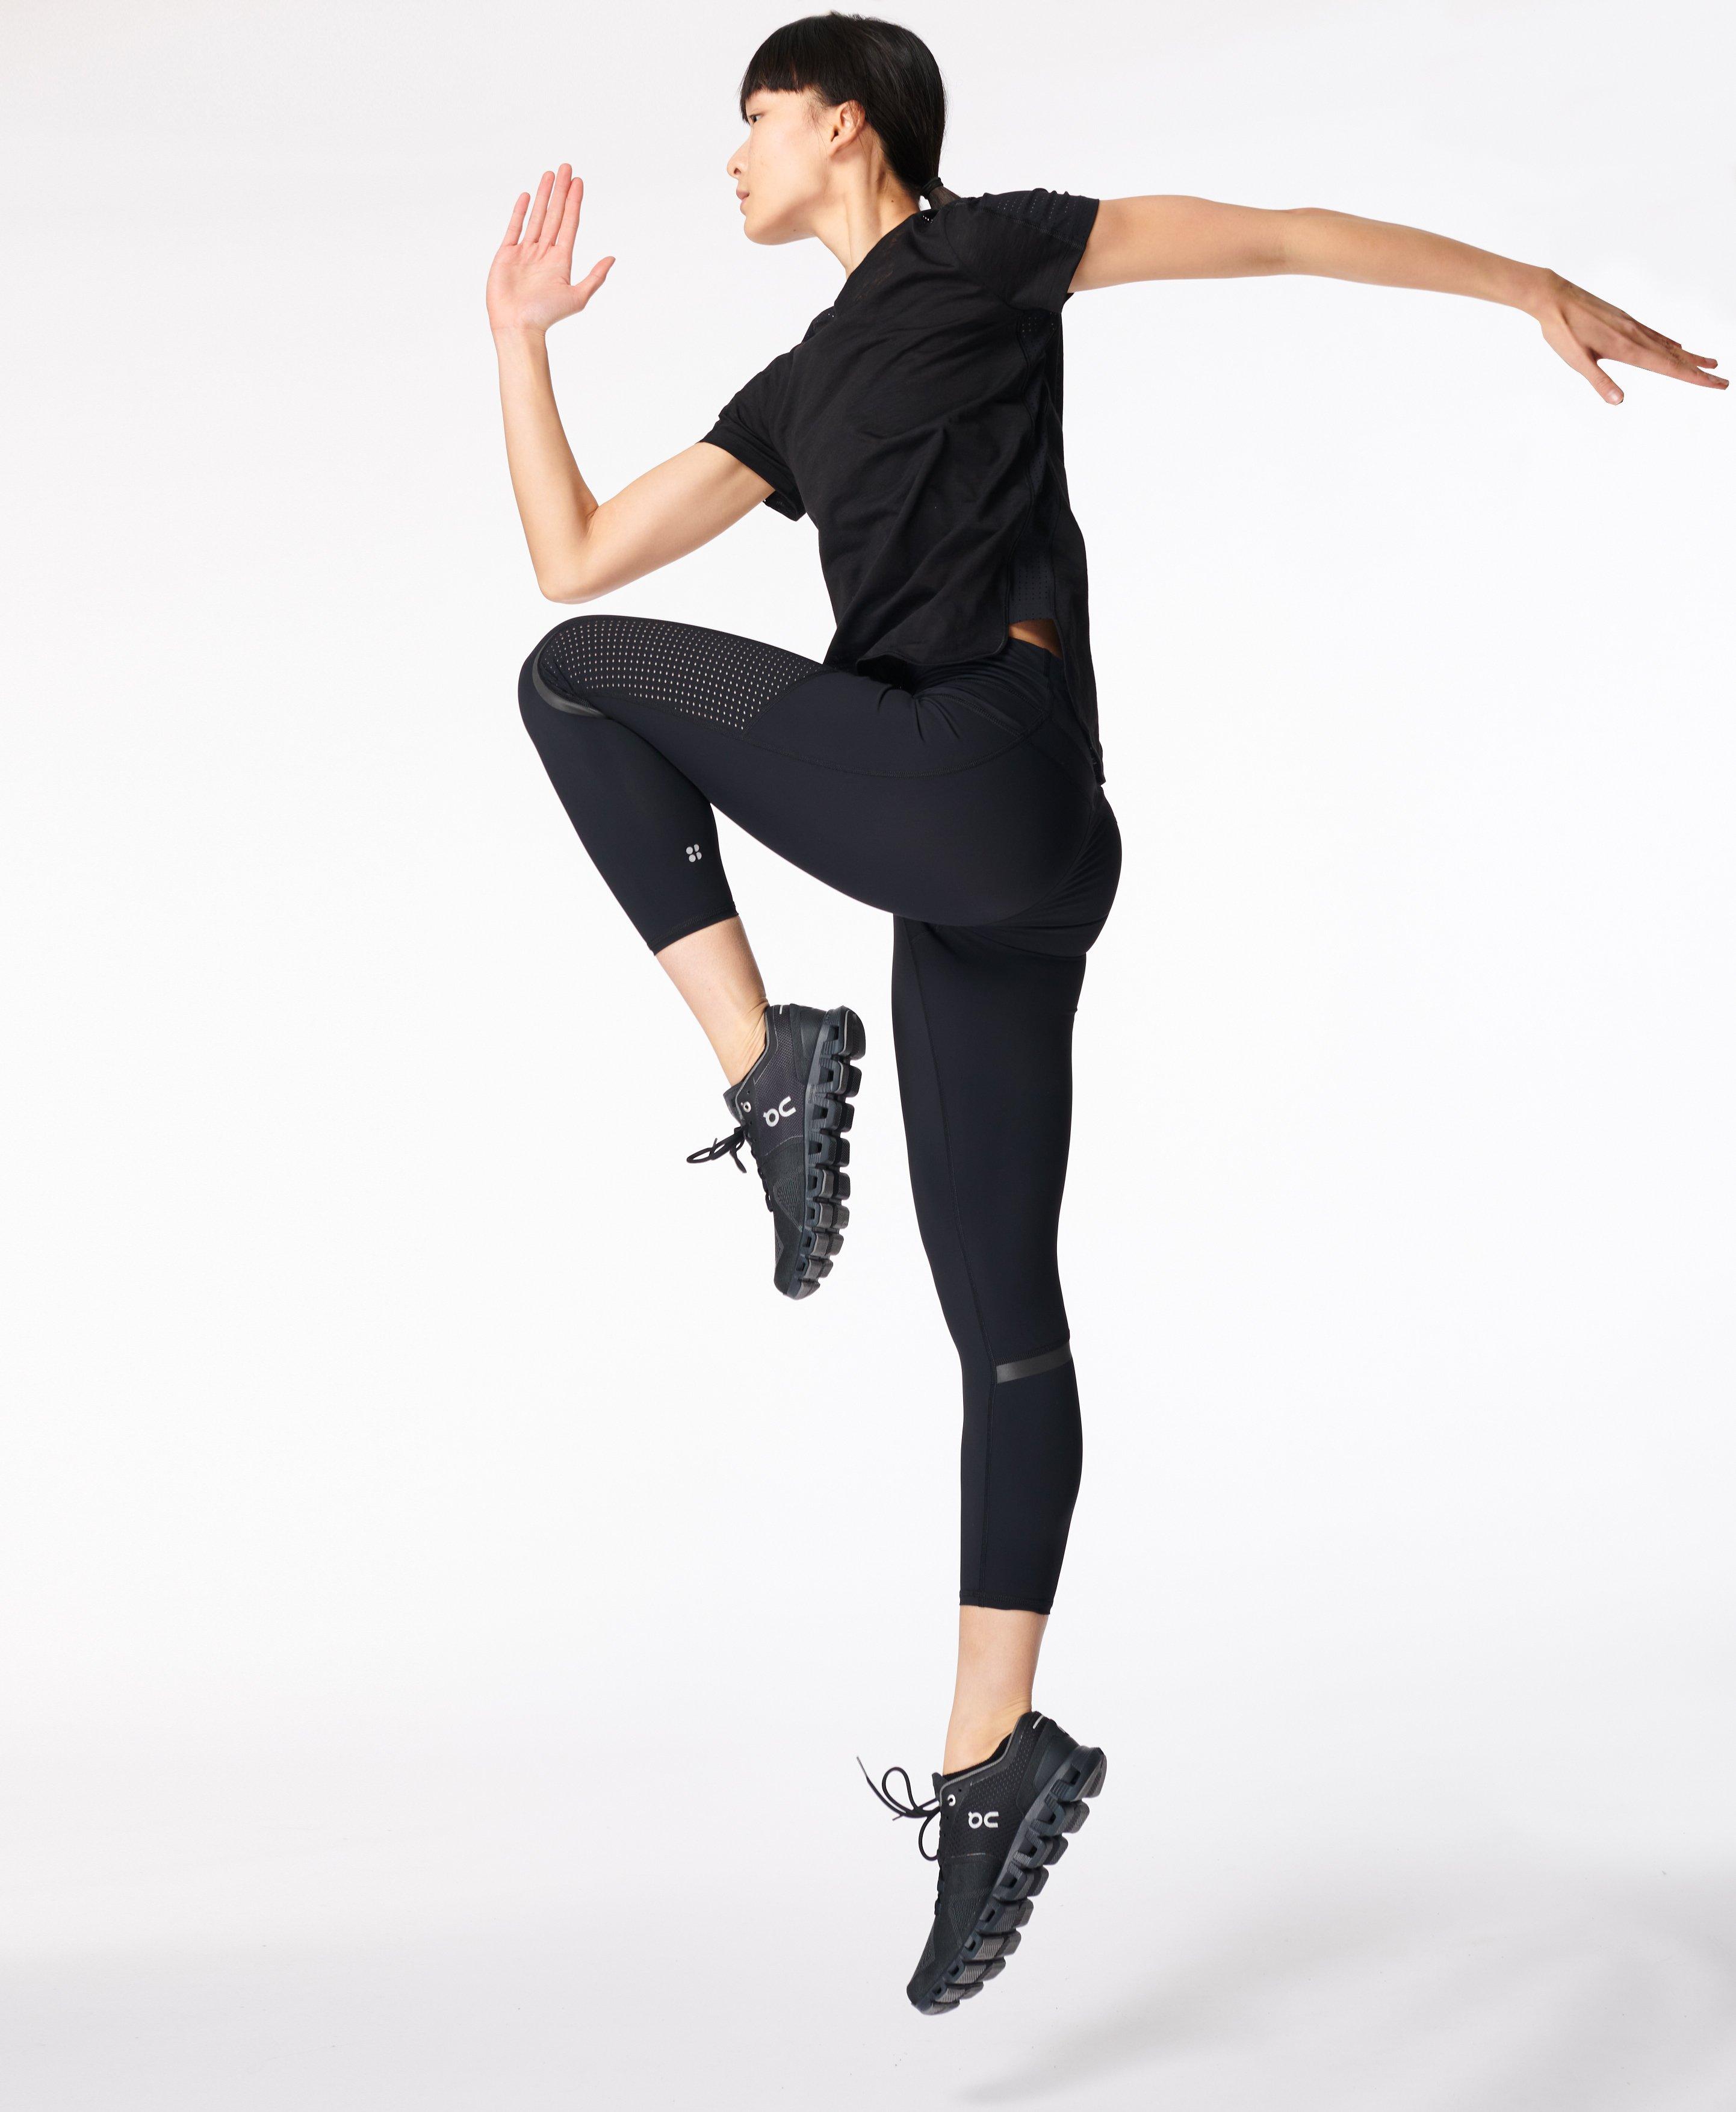 Zero Gravity High-Waisted Running Leggings - Black, Women's Leggings